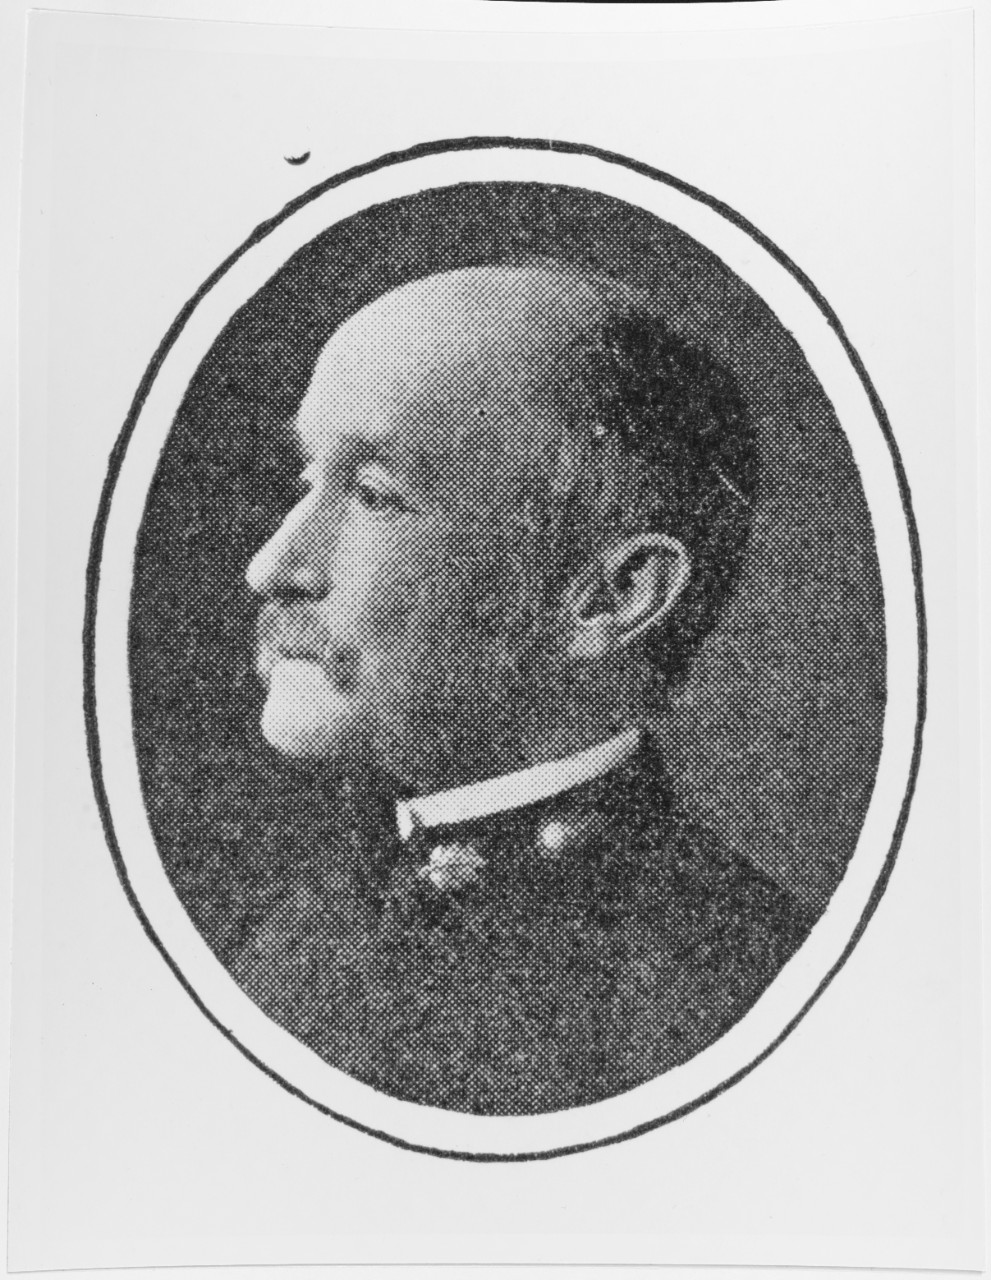 Henry C. Eckstein